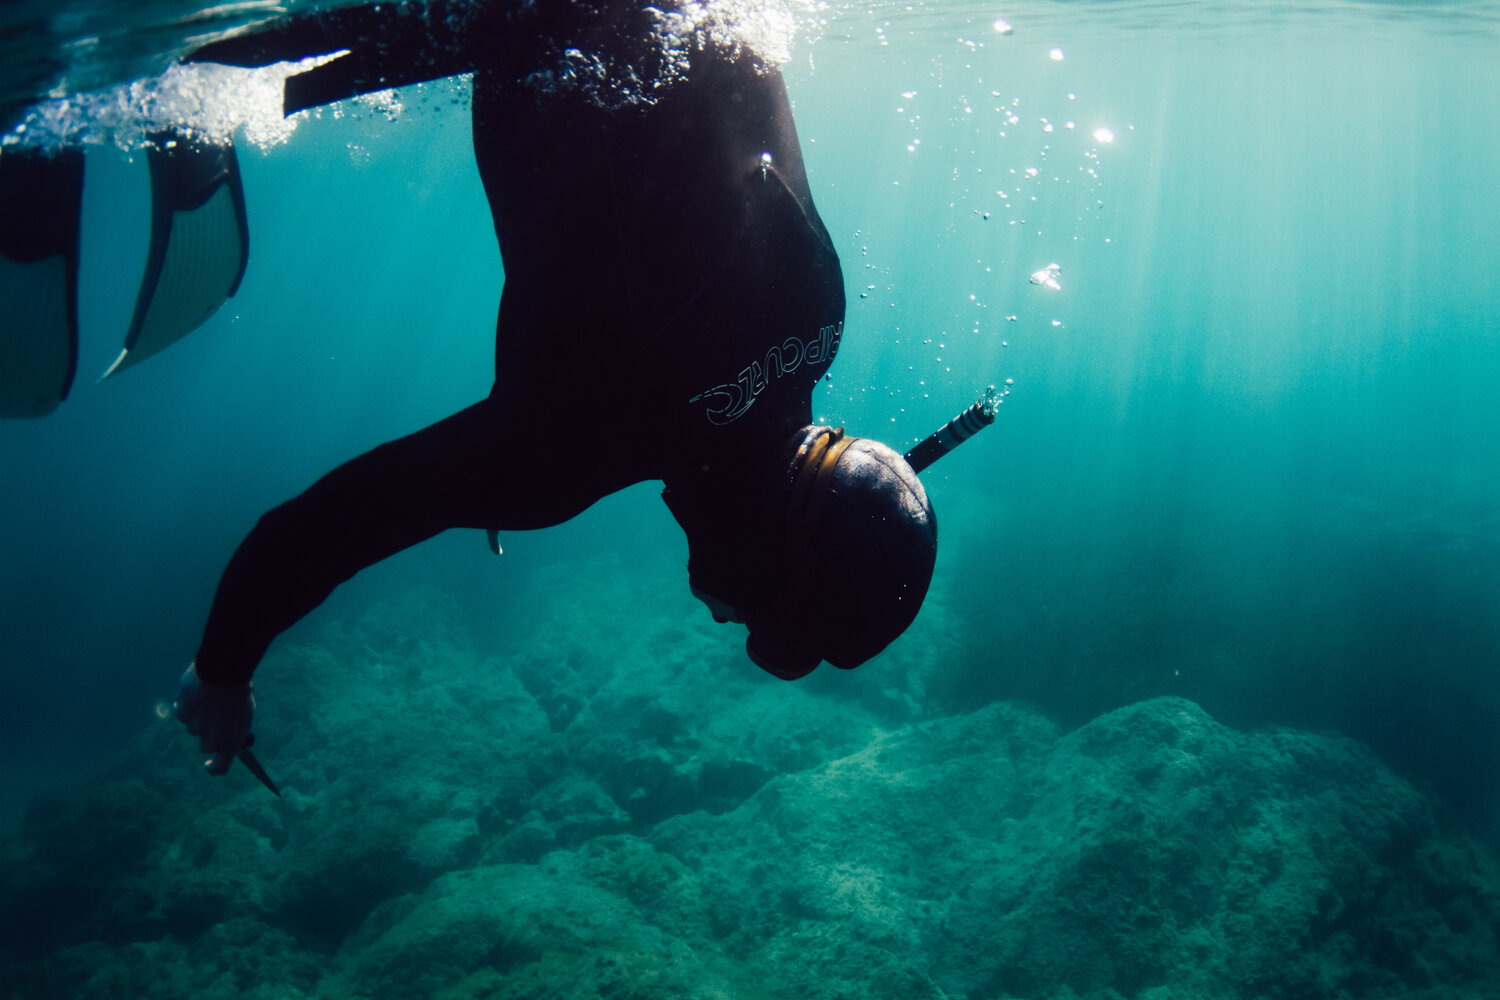 Krista Espino corse corsica photograph photographe photographer europe underwater freedive dive diving explore adventure ajaccio corse-du-sud sea mediterranean island france french_-3.jpg